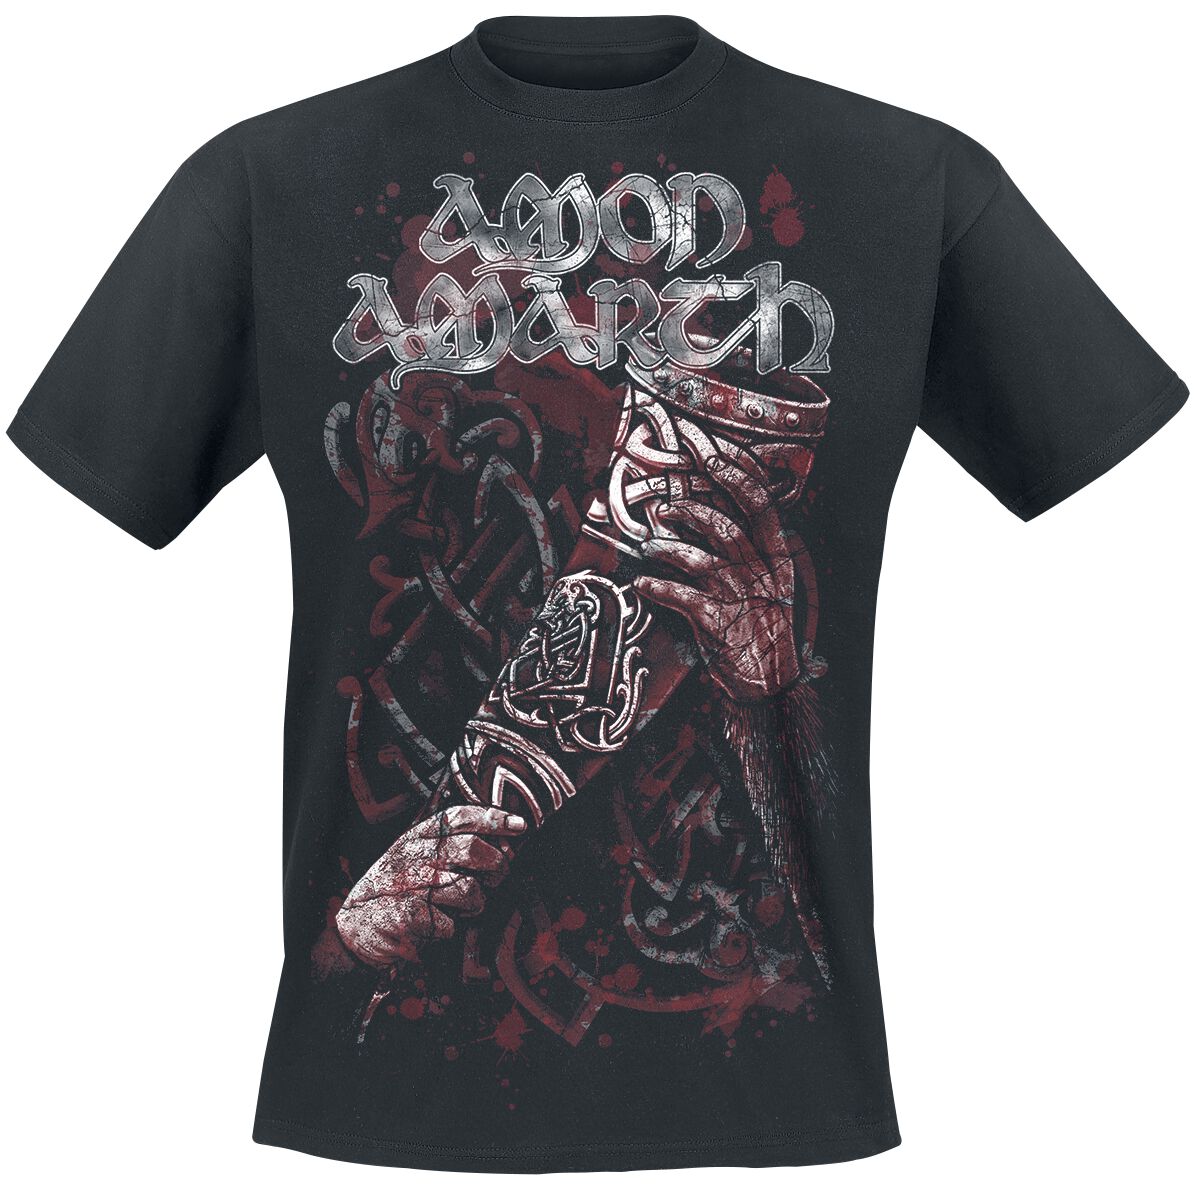 Amon Amarth T-Shirt - Raise Your Horns - S bis 5XL - für Männer - Größe 4XL - schwarz  - Lizenziertes Merchandise!